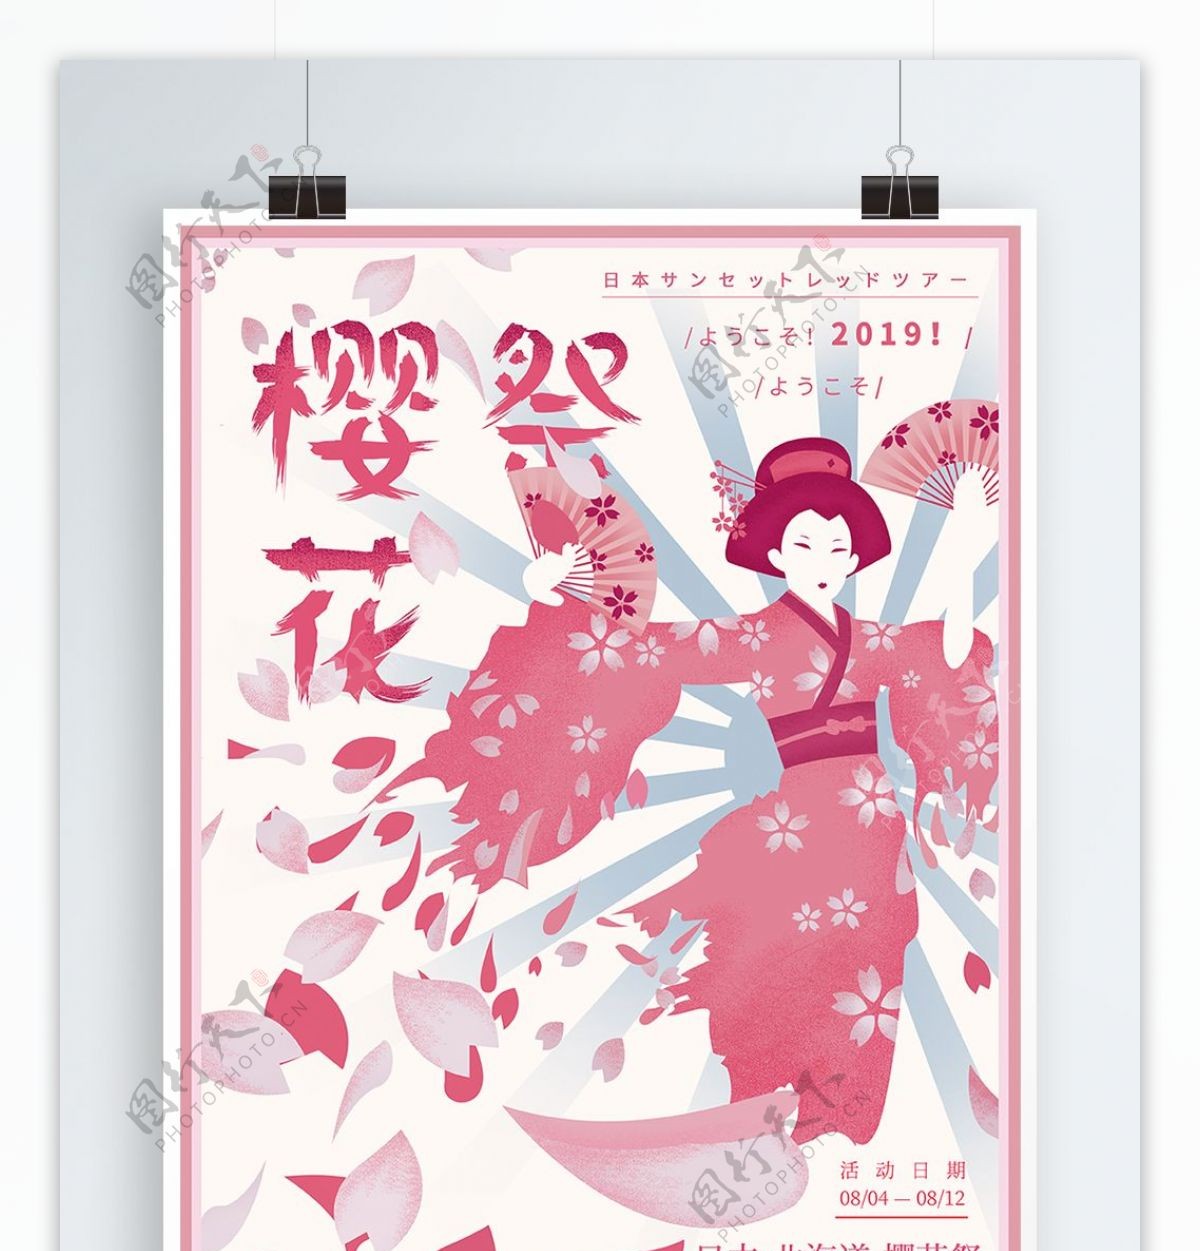 原创手绘日本旅游文化樱花祭海报